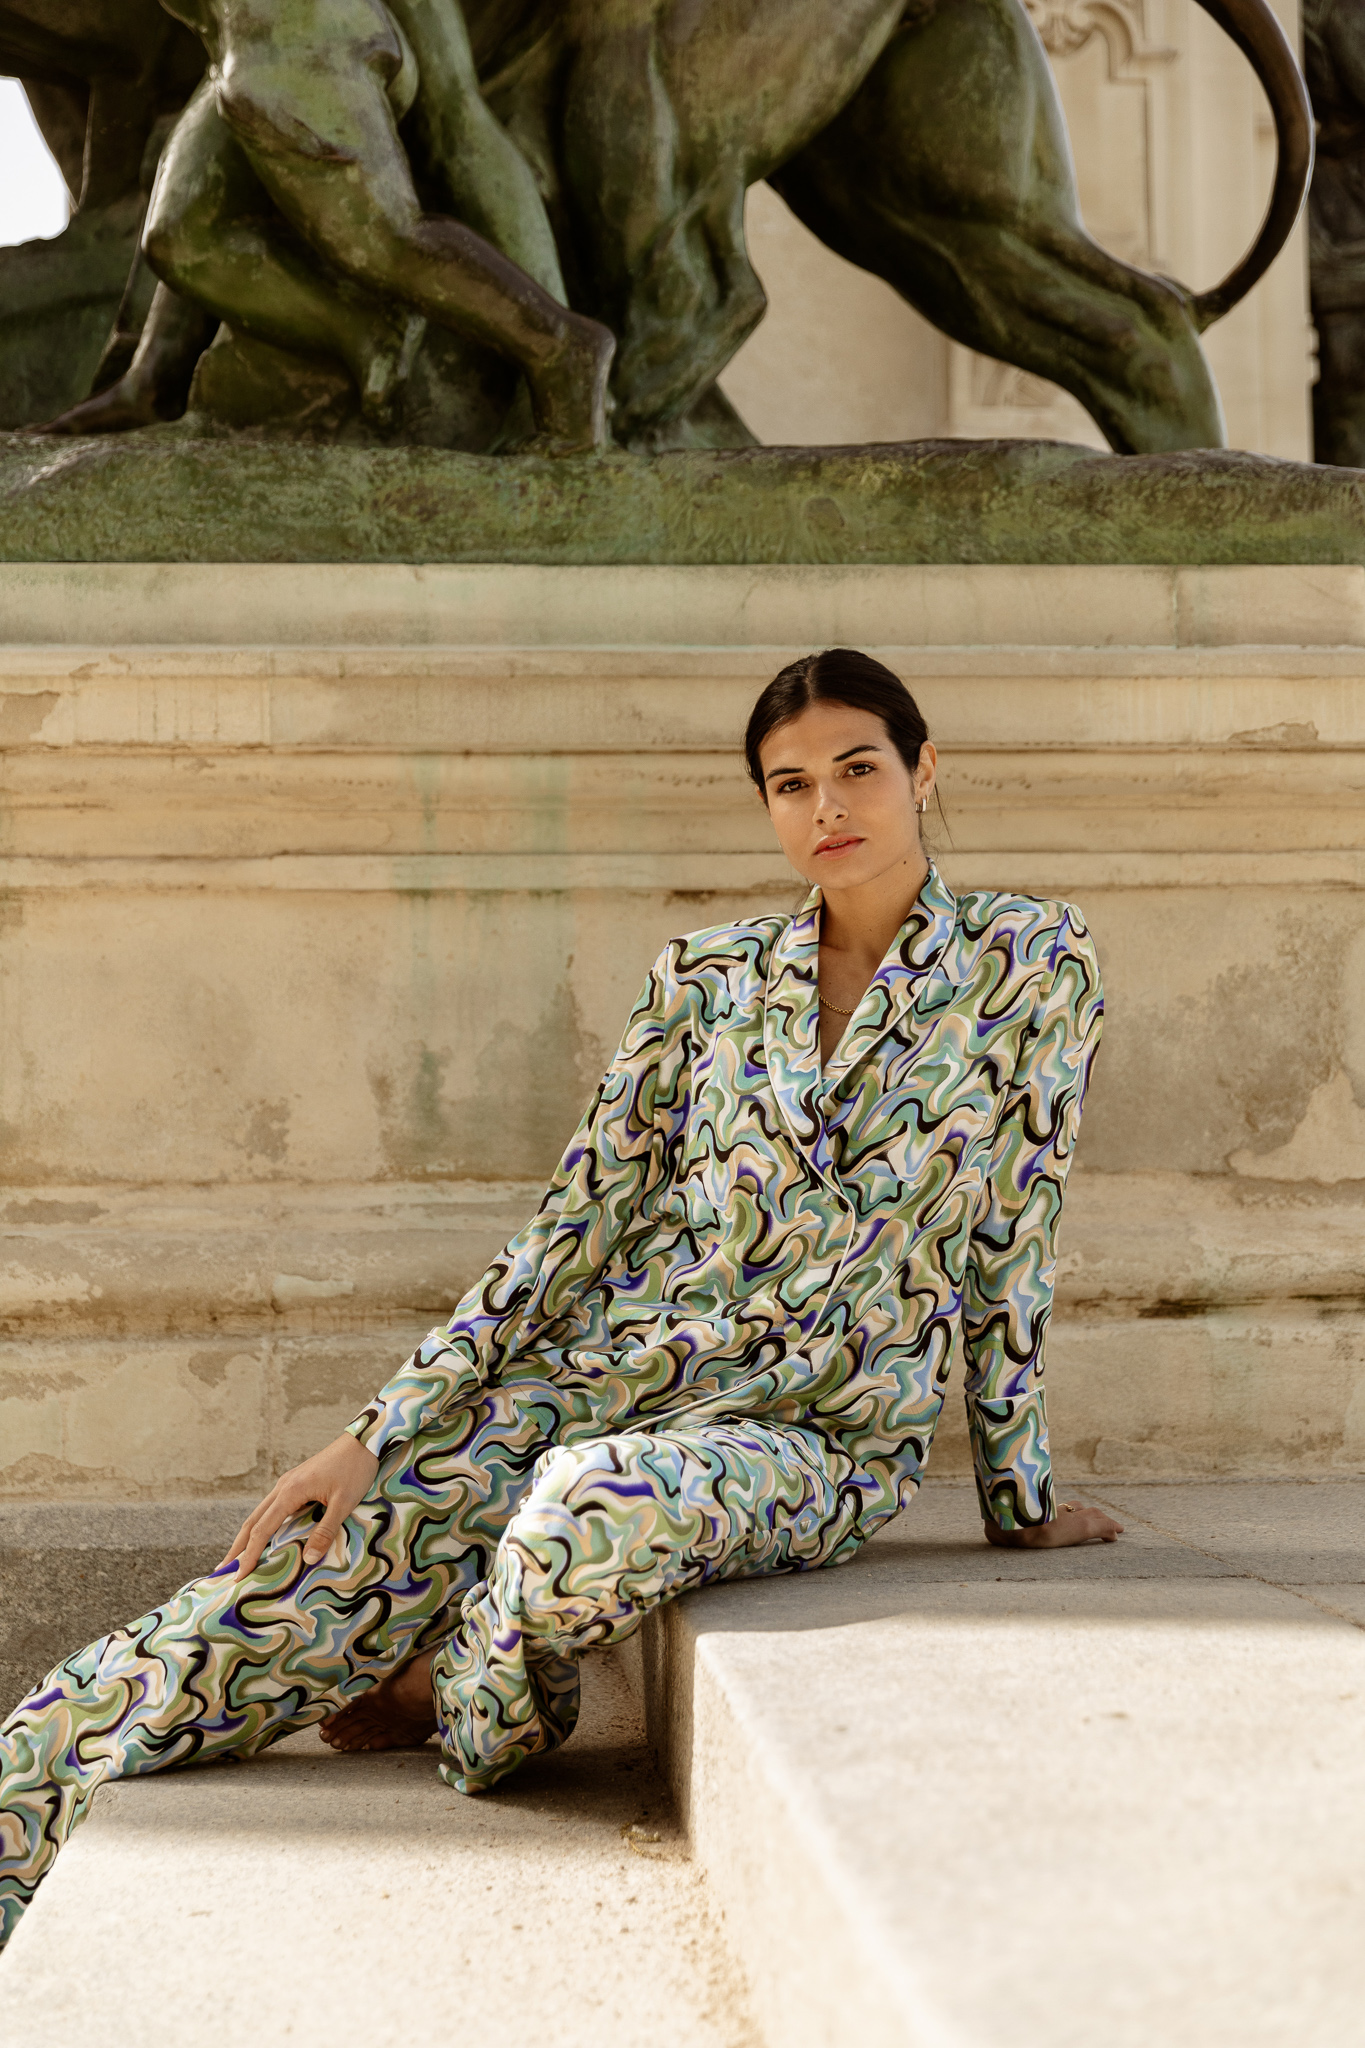 Clara Muniz in Diana d'Orville printed luxury suit